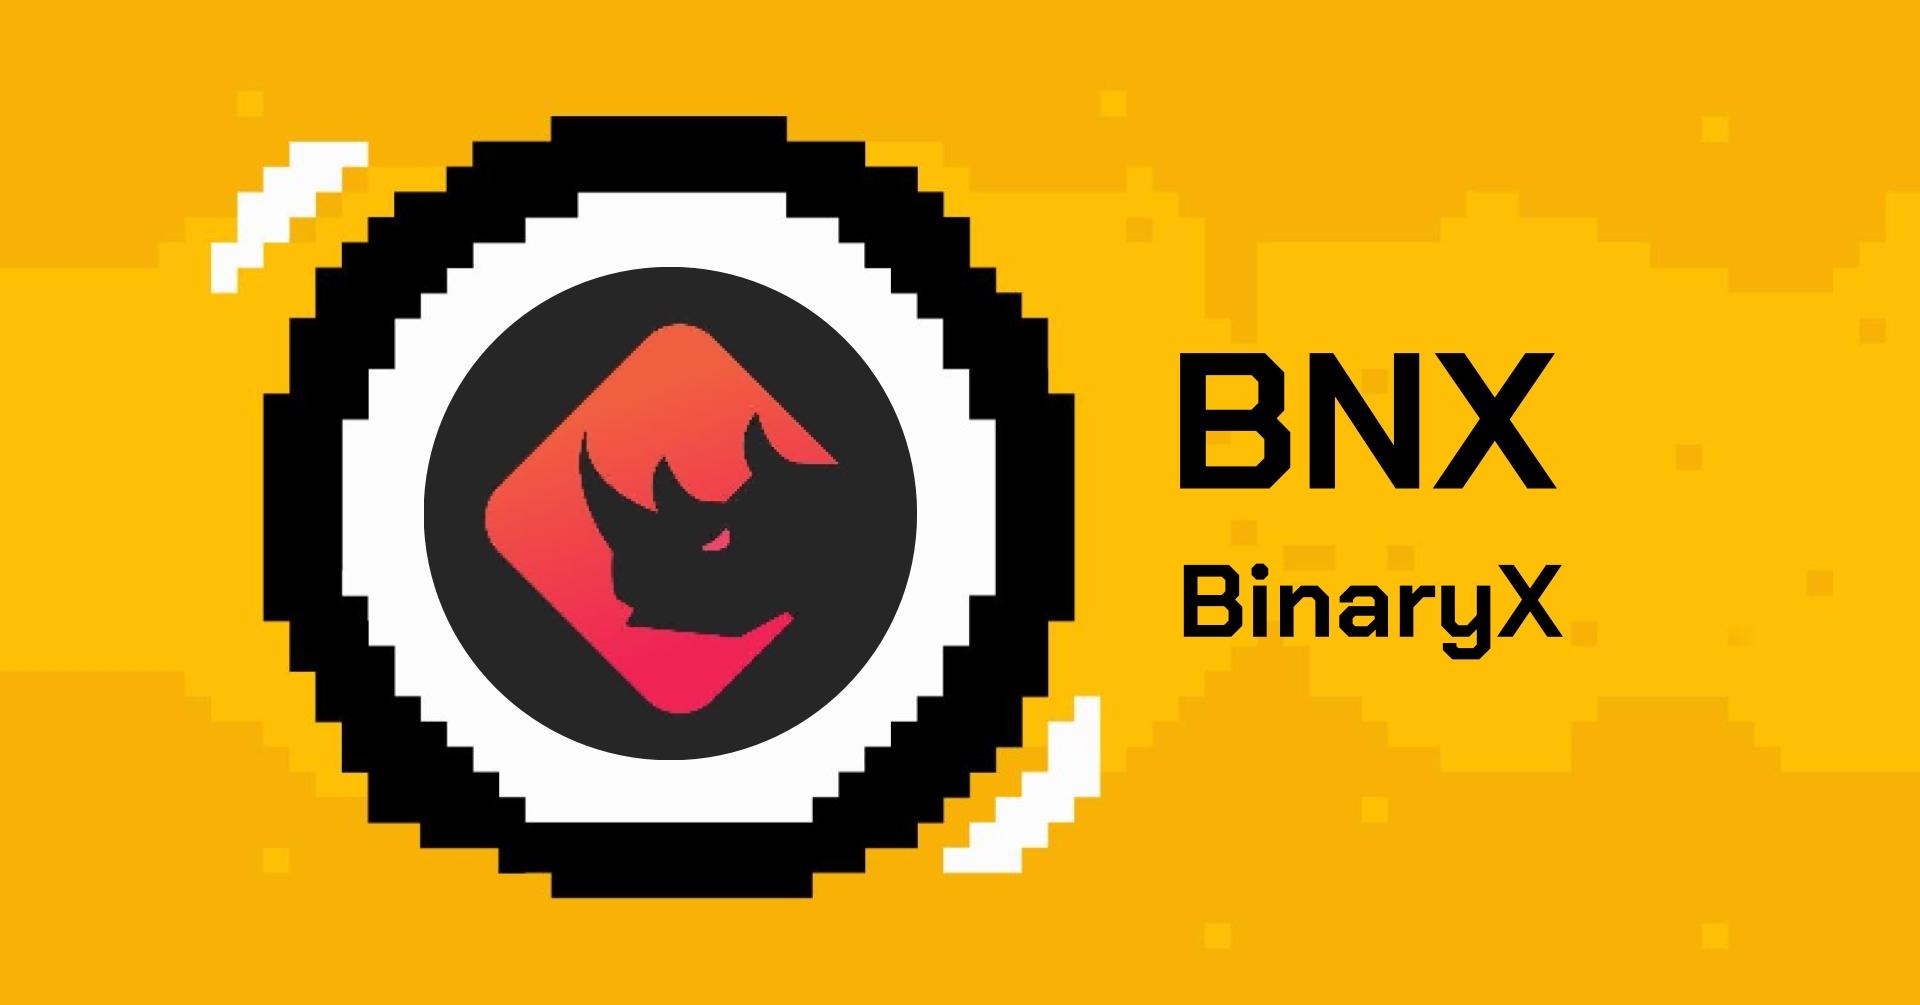 binaryx là gì